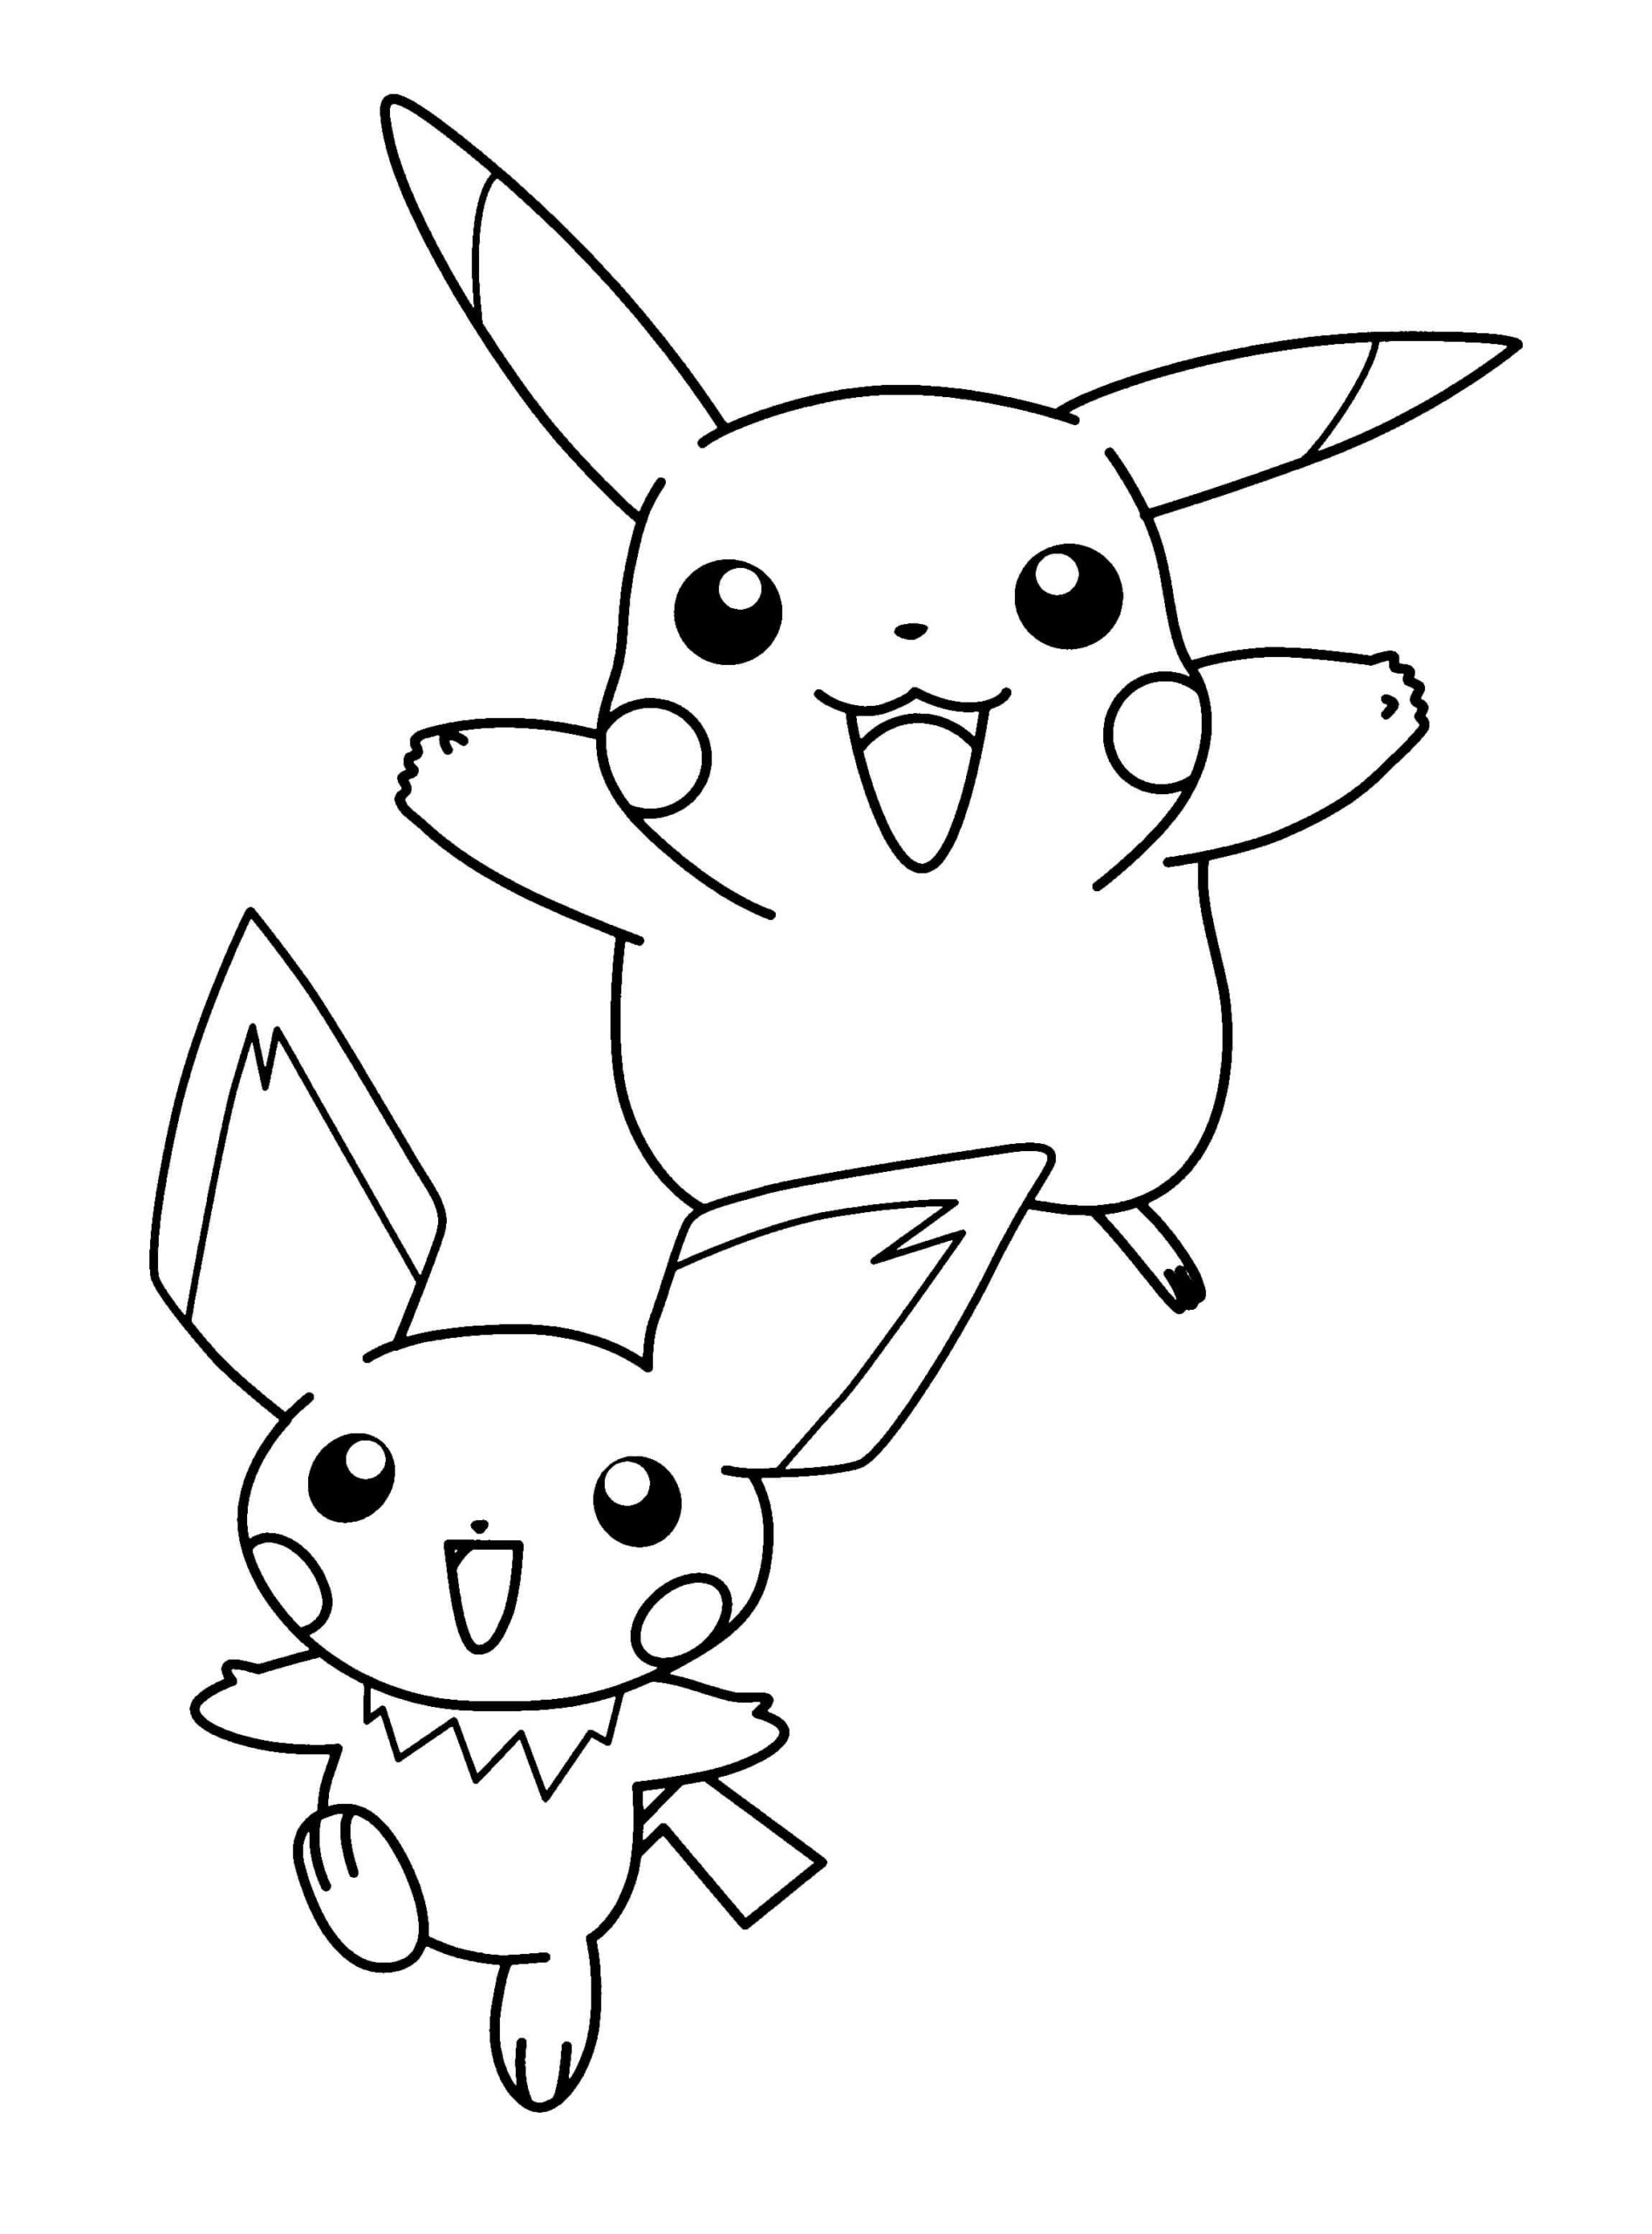 Dibujos de Pikachu y Pichu para colorear